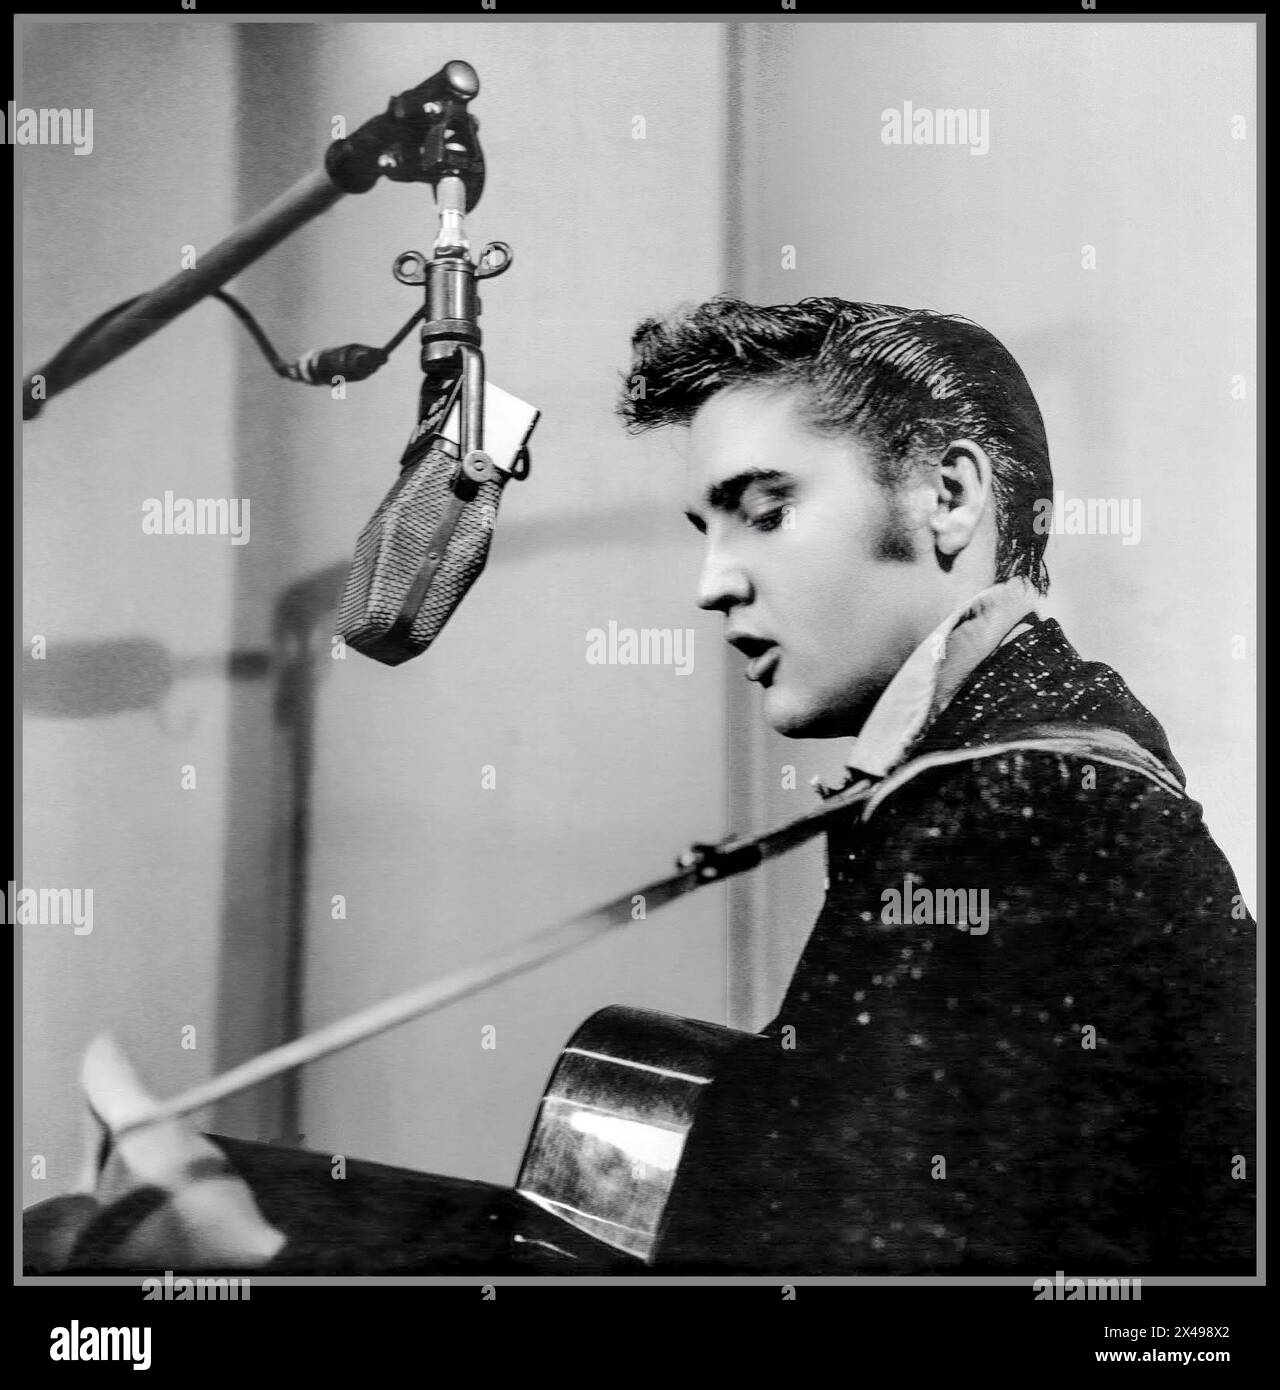 ELVIS PRESLEY iconique pop star dans les années 1950 au début de sa carrière, chantant et jouant également de sa guitare dans un studio d'enregistrement avec microphone de l'époque. Hollywood USA Banque D'Images